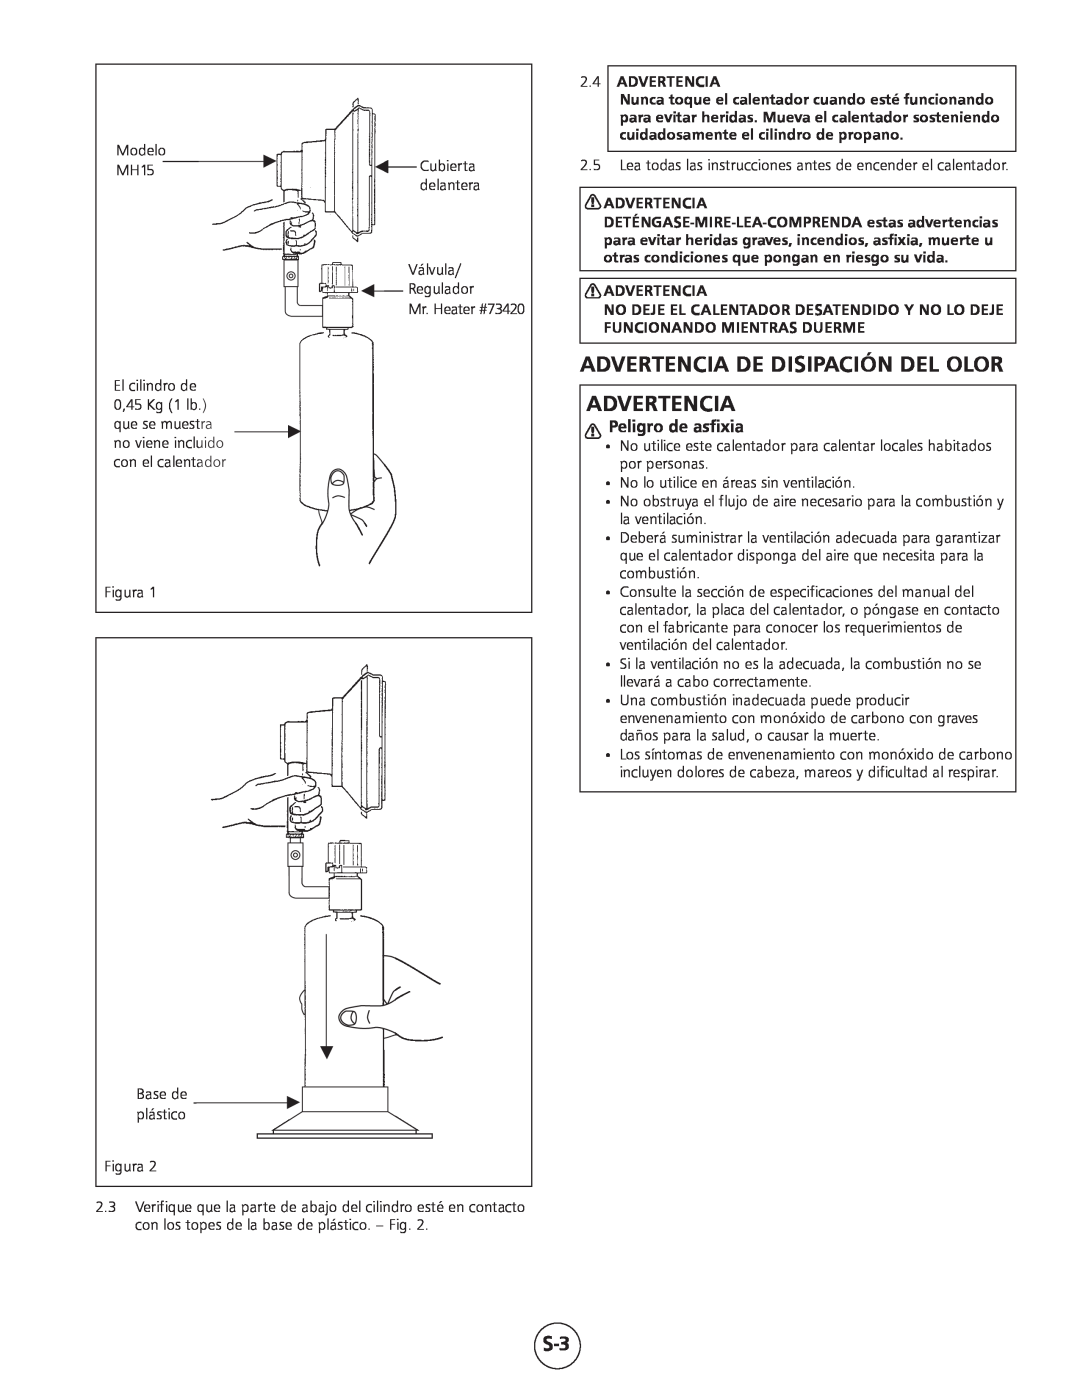 Mr. Heater MH15 operating instructions Advertencia De Disipación Del Olor Advertencia, Peligro de asfixia, 2.4ADVERTENCIA 